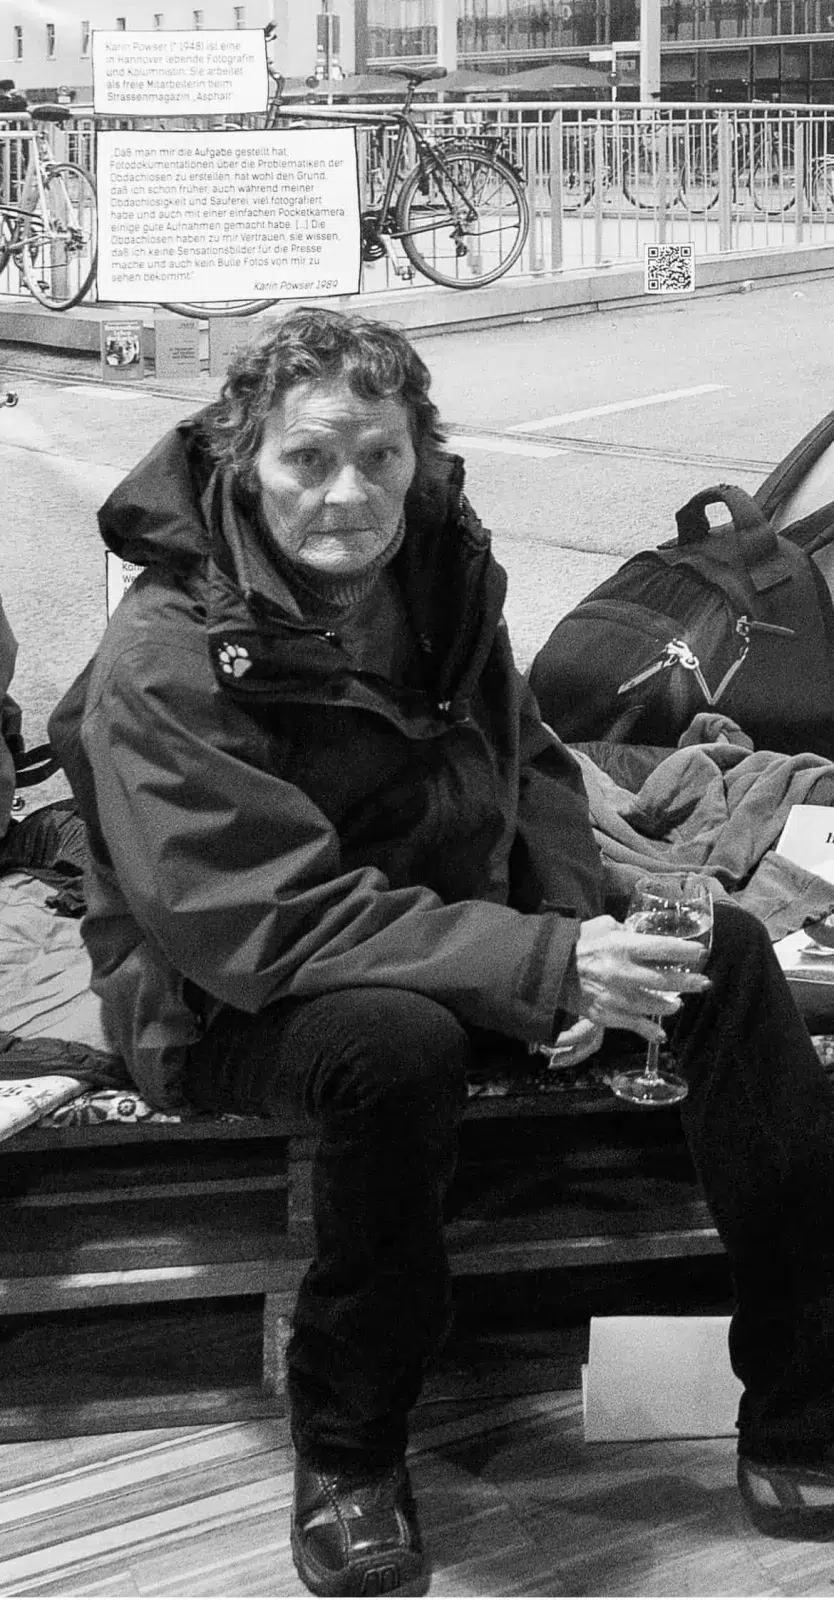 Karin Powser sitzt auf Europaletten mit Schlafsack (scheinbar ein Obdachlosenschlaflager) im Fußgängerbereich in einer Innenstadt.